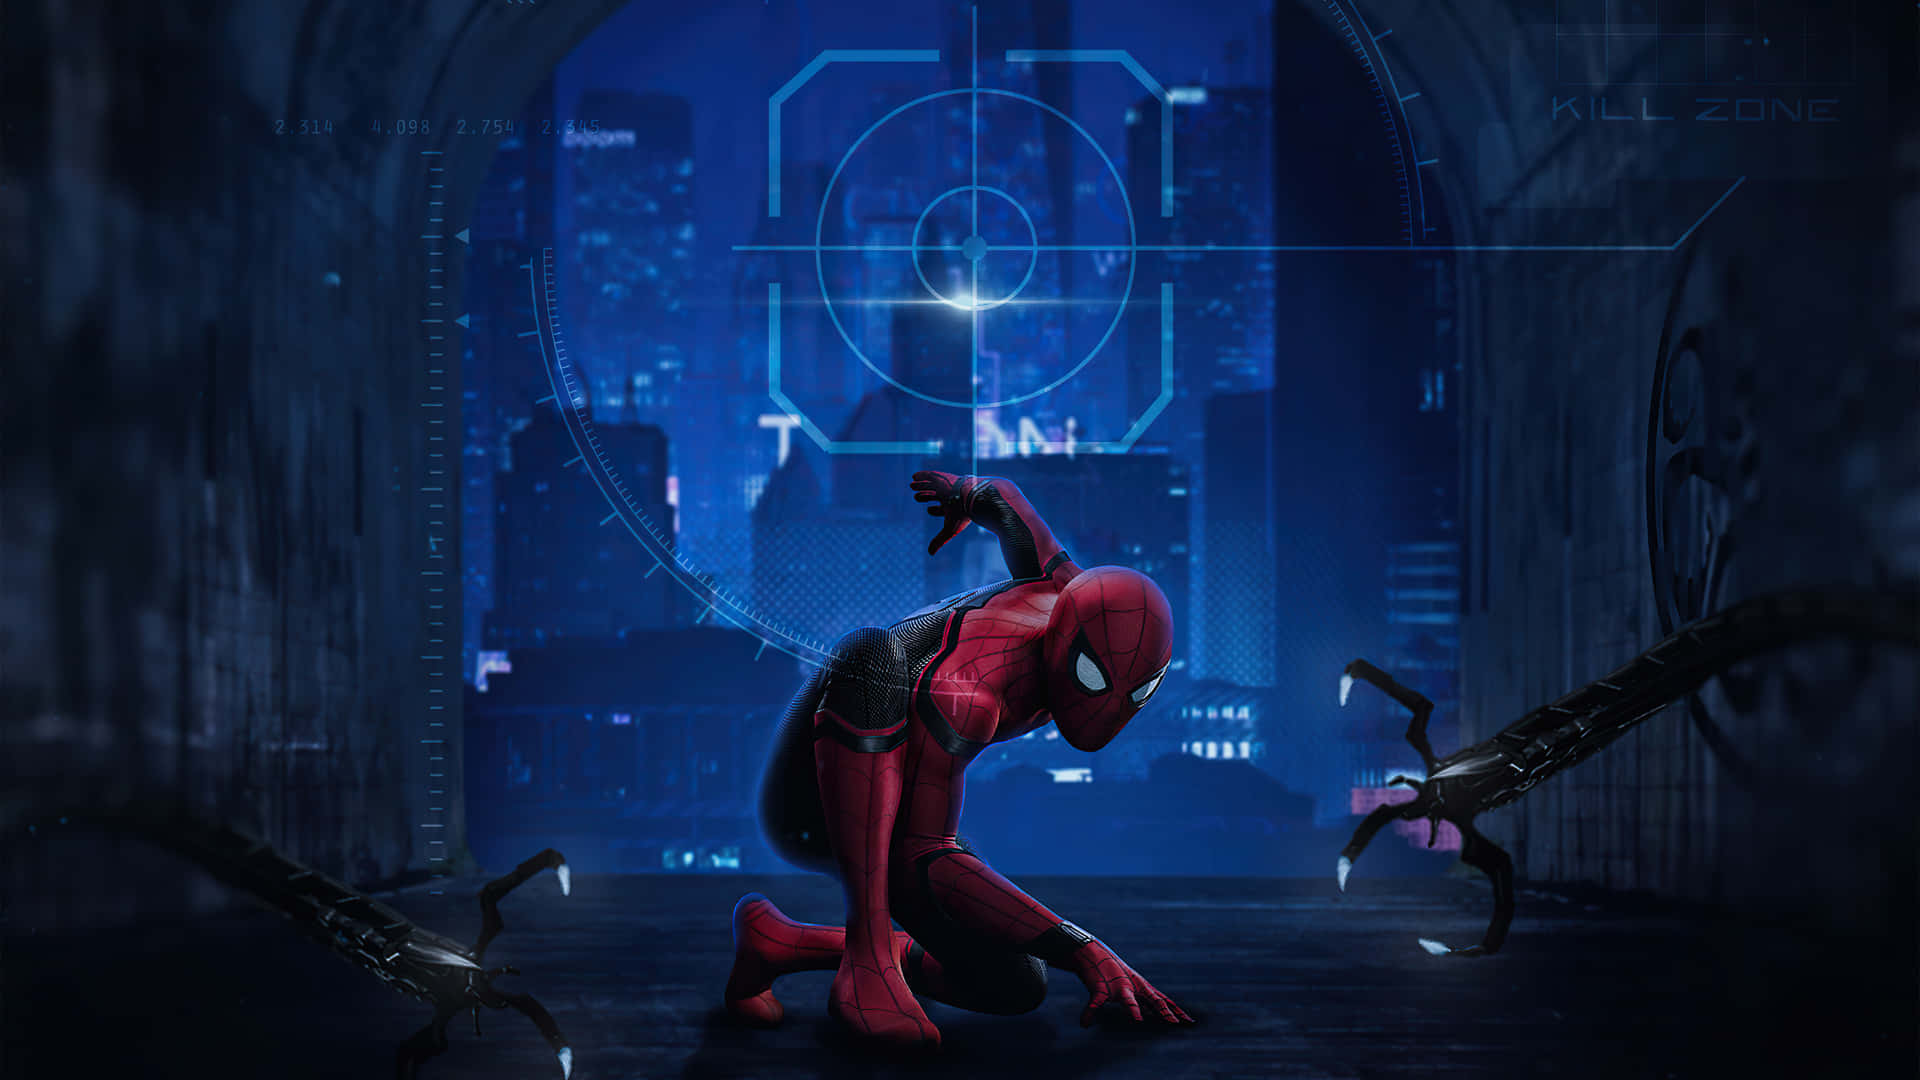 Spider Man Background